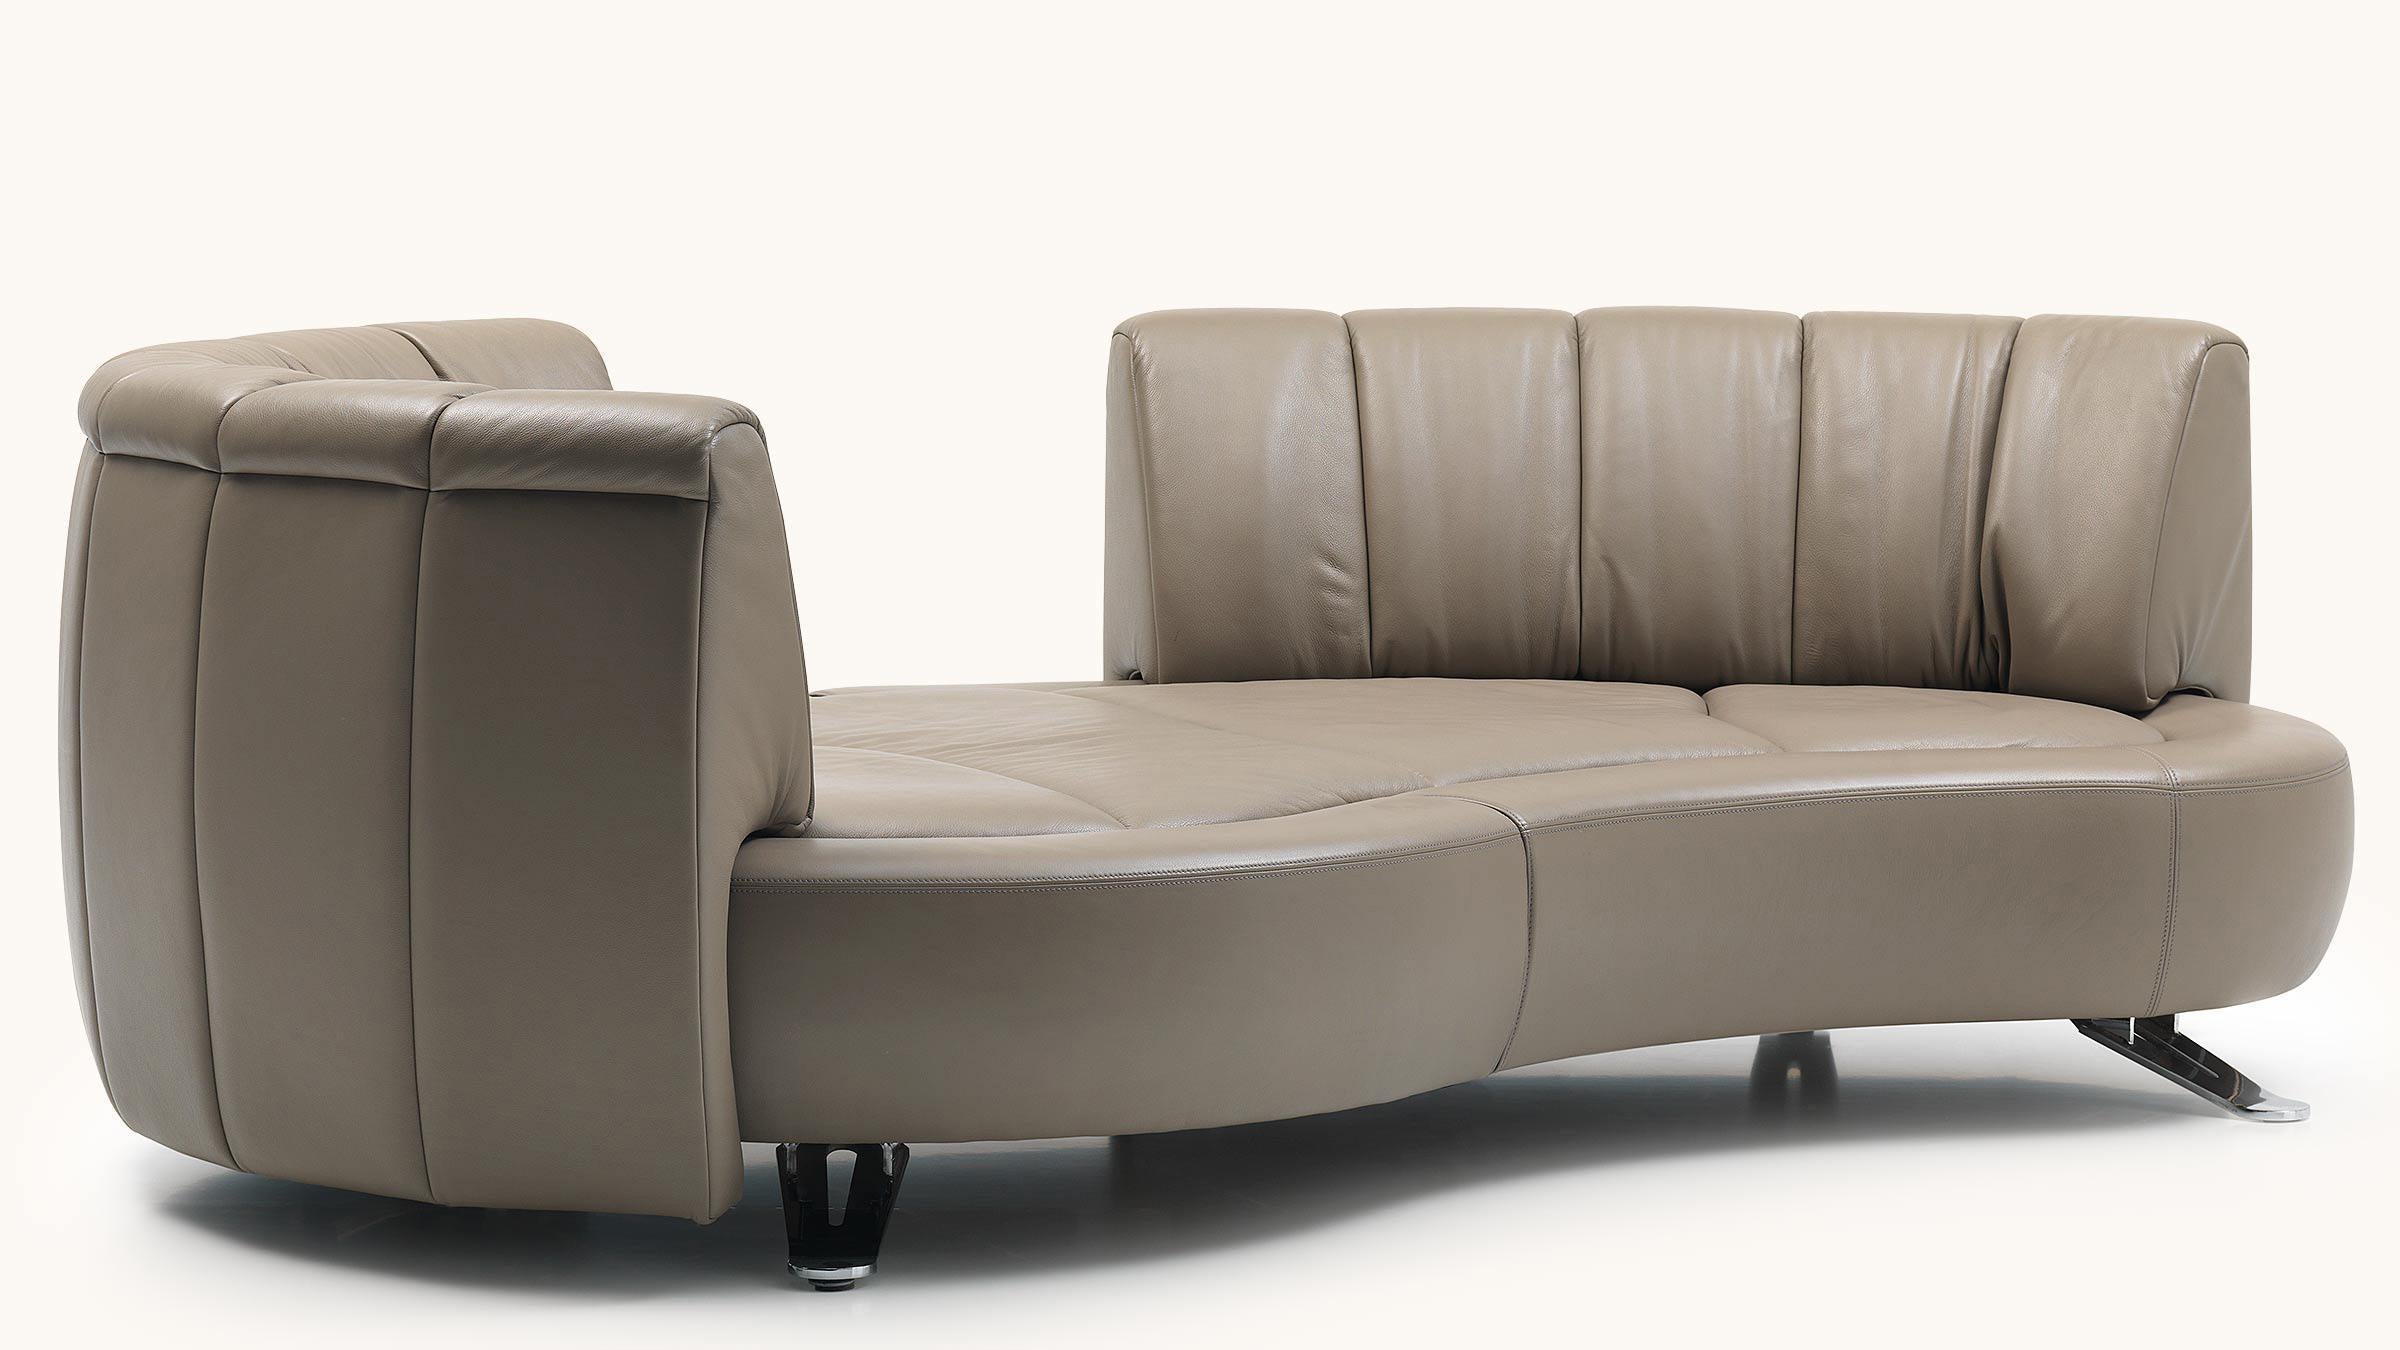 Der revolutionäre Rückenschiebemechanismus DS-164 kann mit einem einzigen Handgriff von einem offenen Sofa in eine elegante Chaiselongue verwandelt werden, während die Rückenlehne stilvoll um 360° gedreht werden kann. Die modulare, organisch